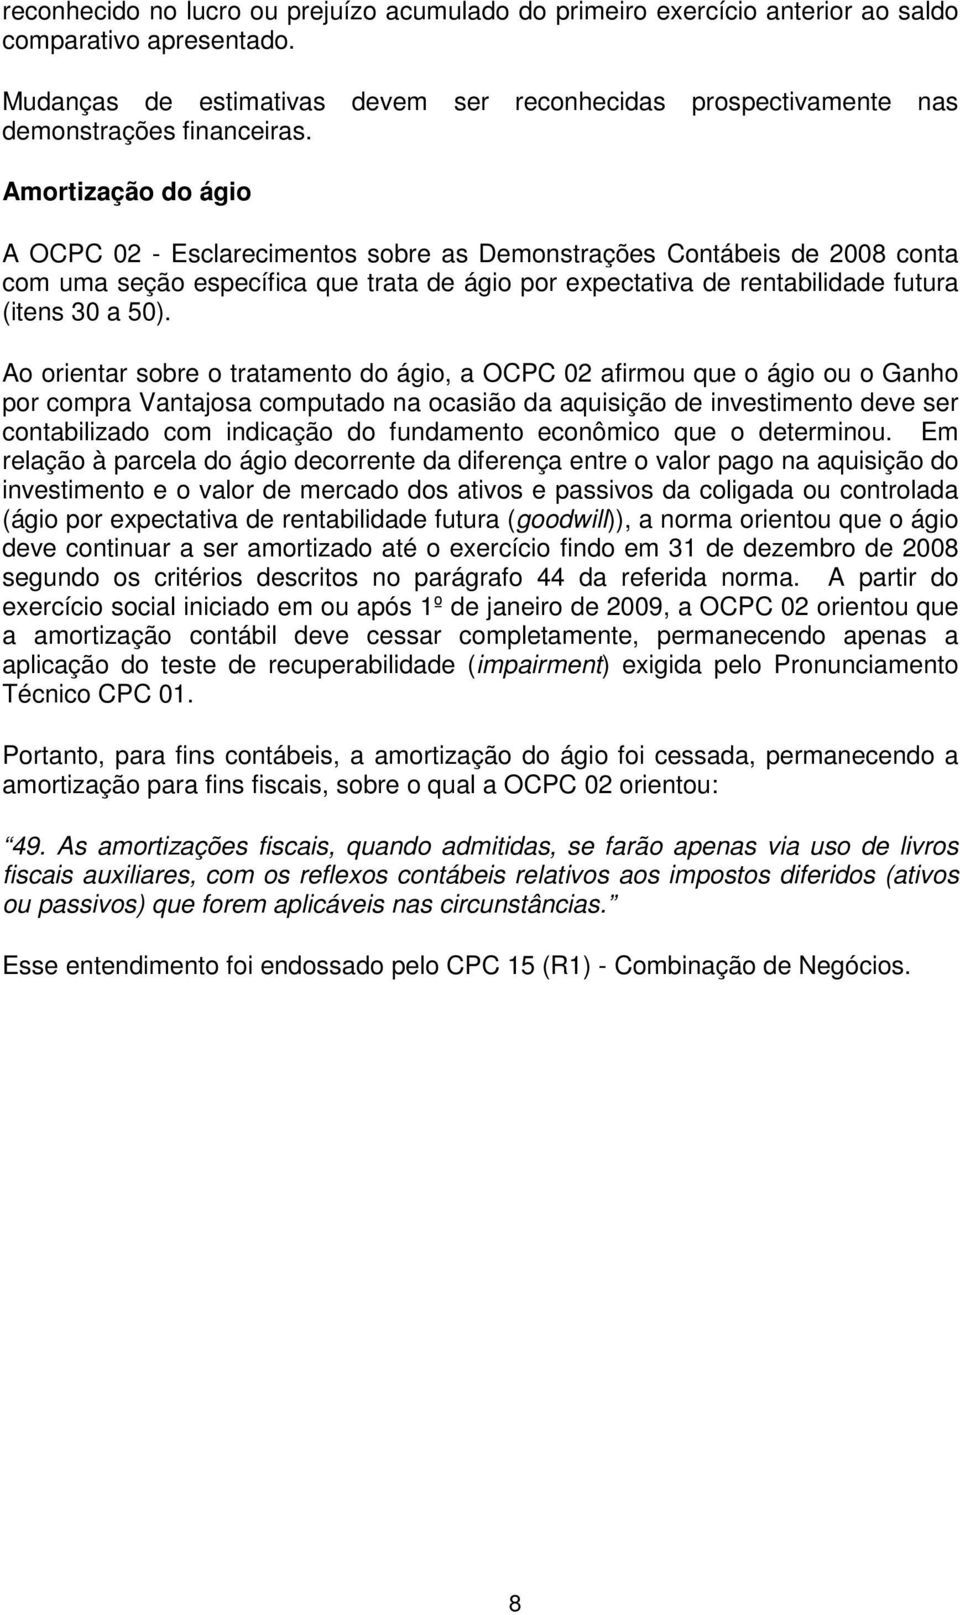 Amortização do ágio A OCPC 02 - Esclarecimentos sobre as Demonstrações Contábeis de 2008 conta com uma seção específica que trata de ágio por expectativa de rentabilidade futura (itens 30 a 50).